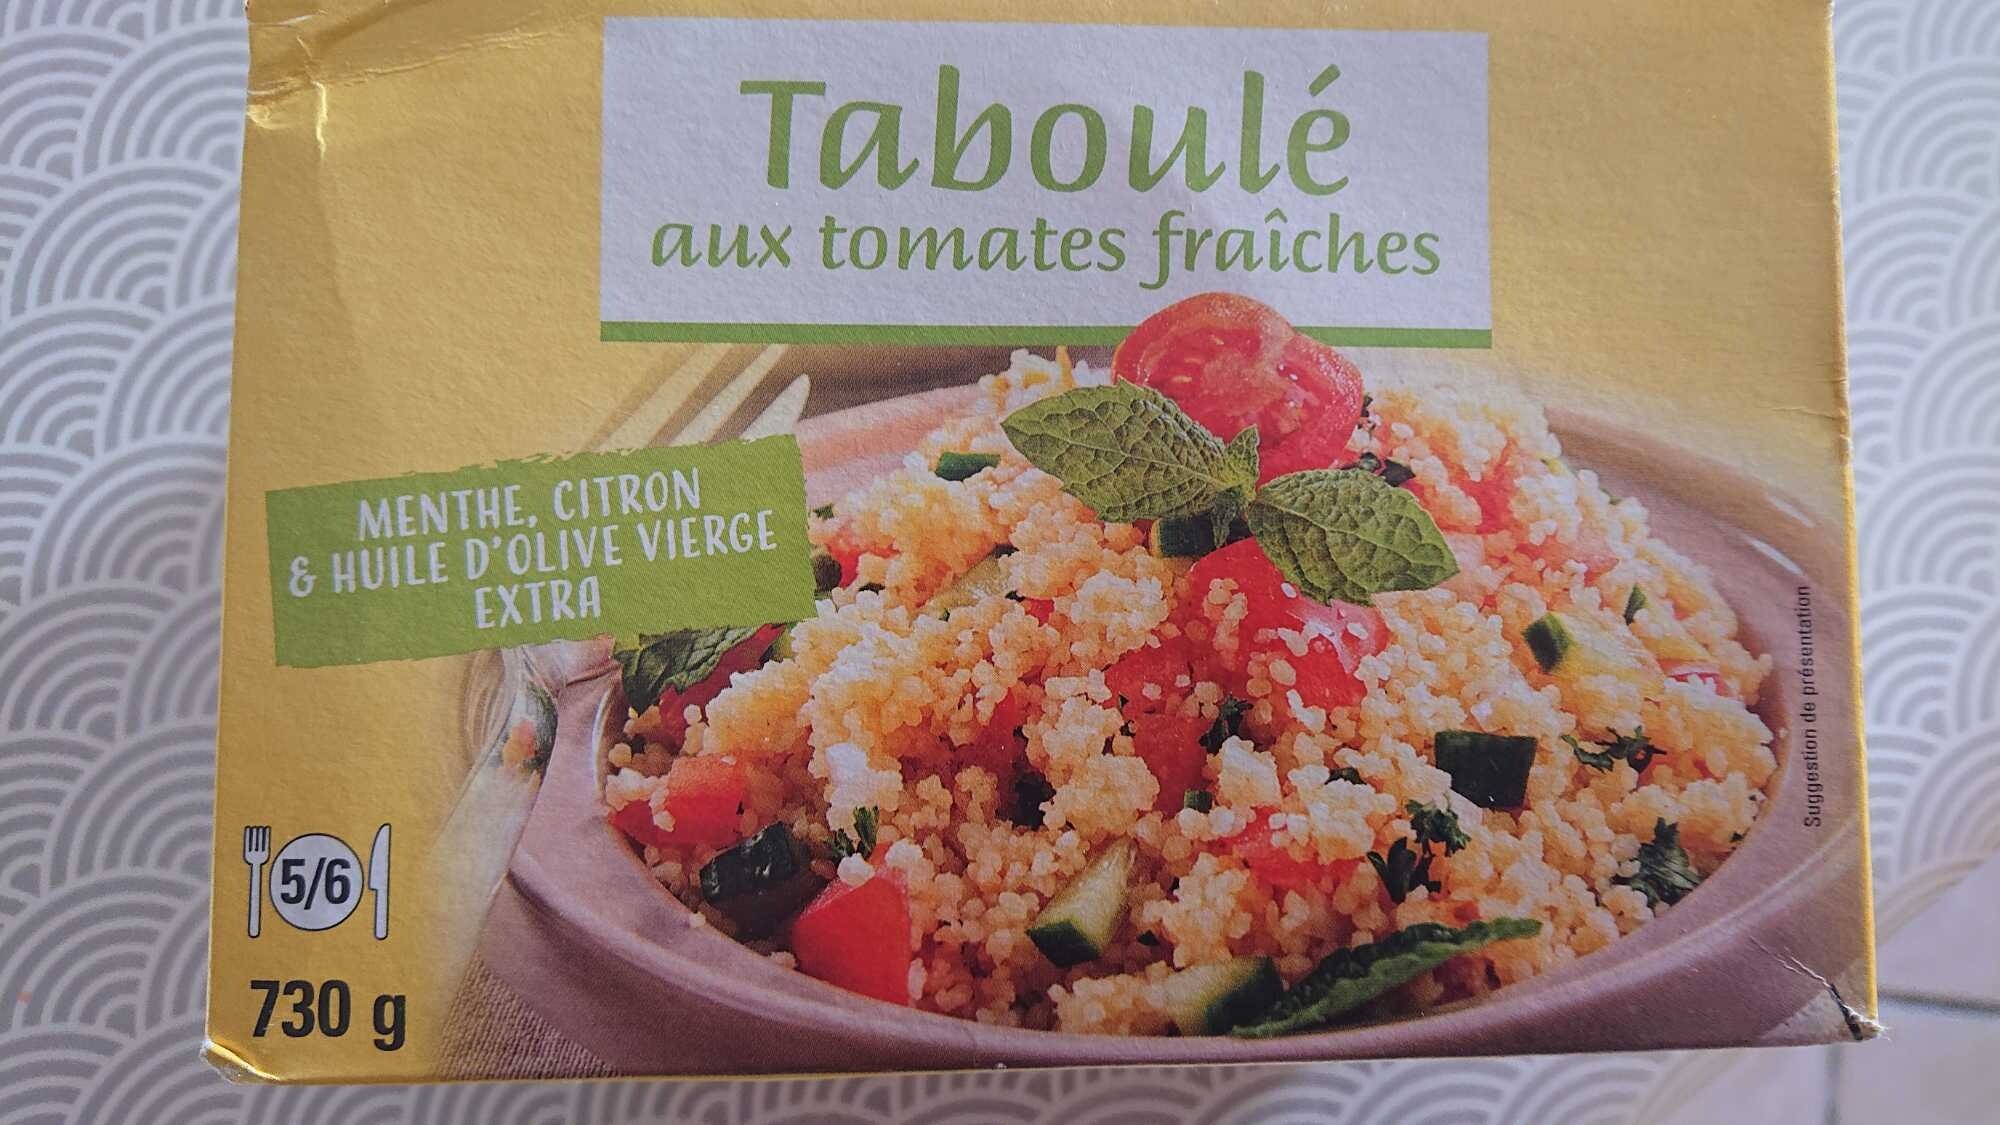 Traboule aux tomates fraiches - Product - fr